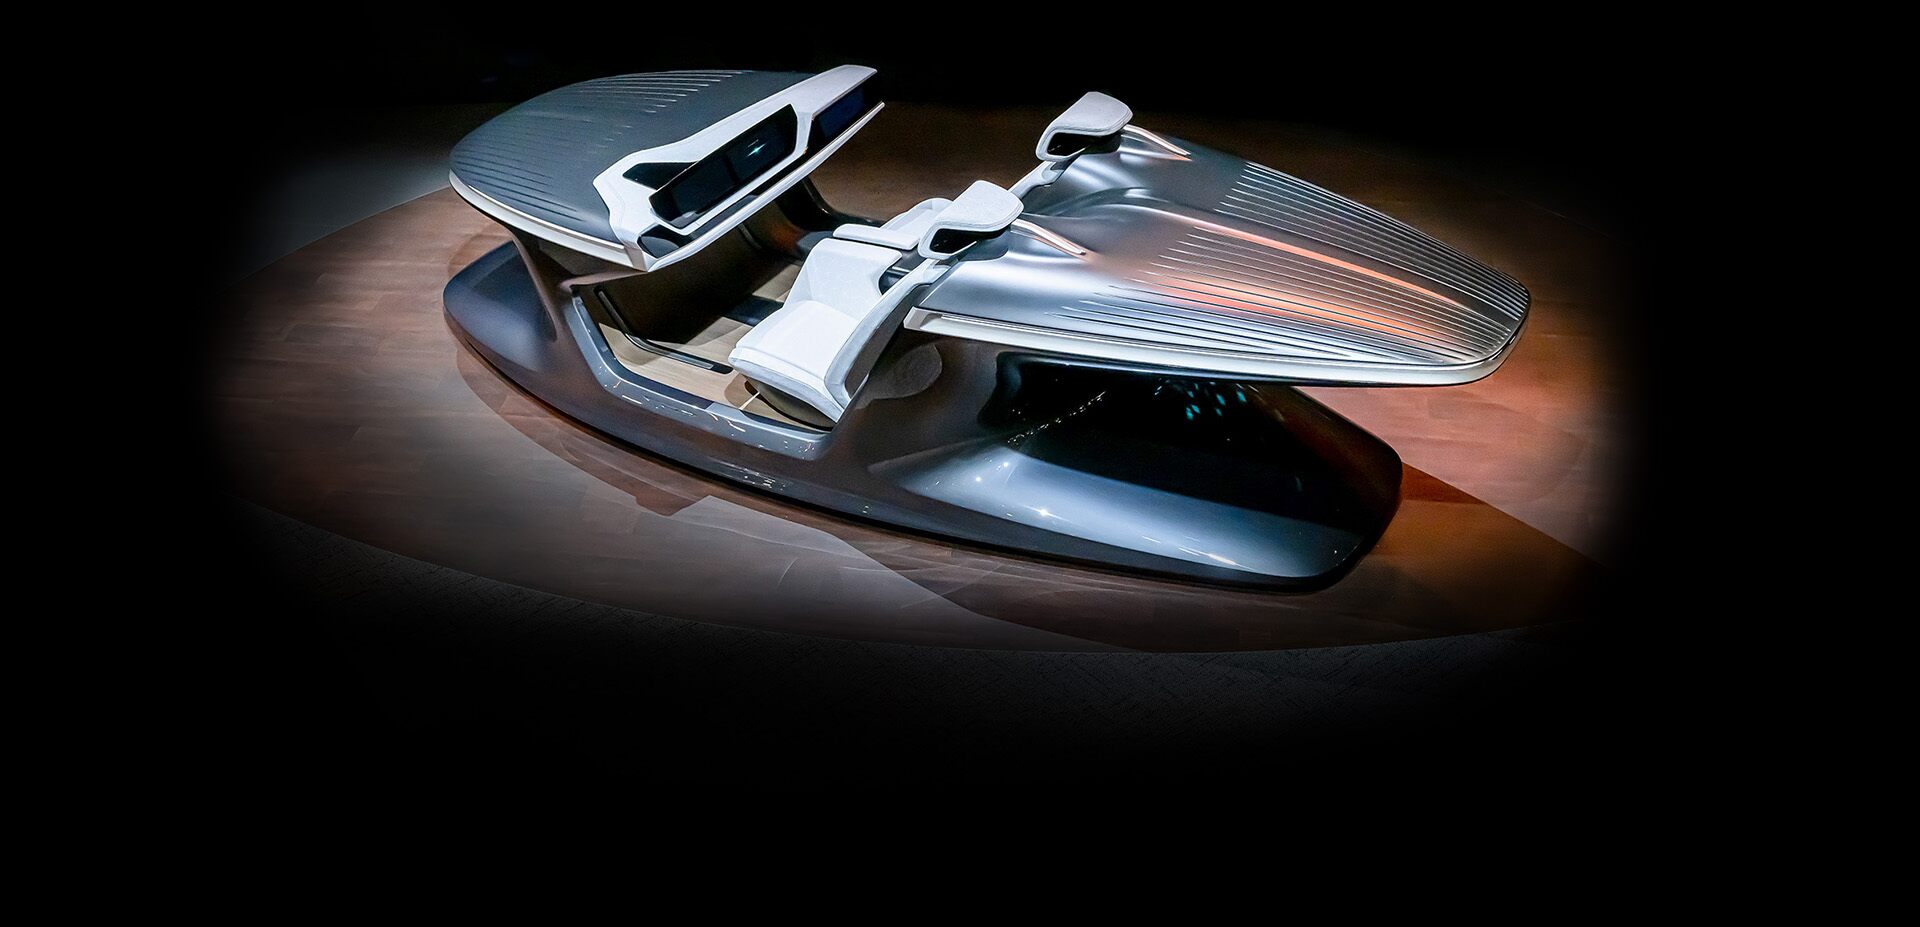 Vista de gran angular elevada del vehículo conceptual Chrysler Synthesis desde el lado del conductor, en un estudio oscuro con un reflector sobre el vehículo.